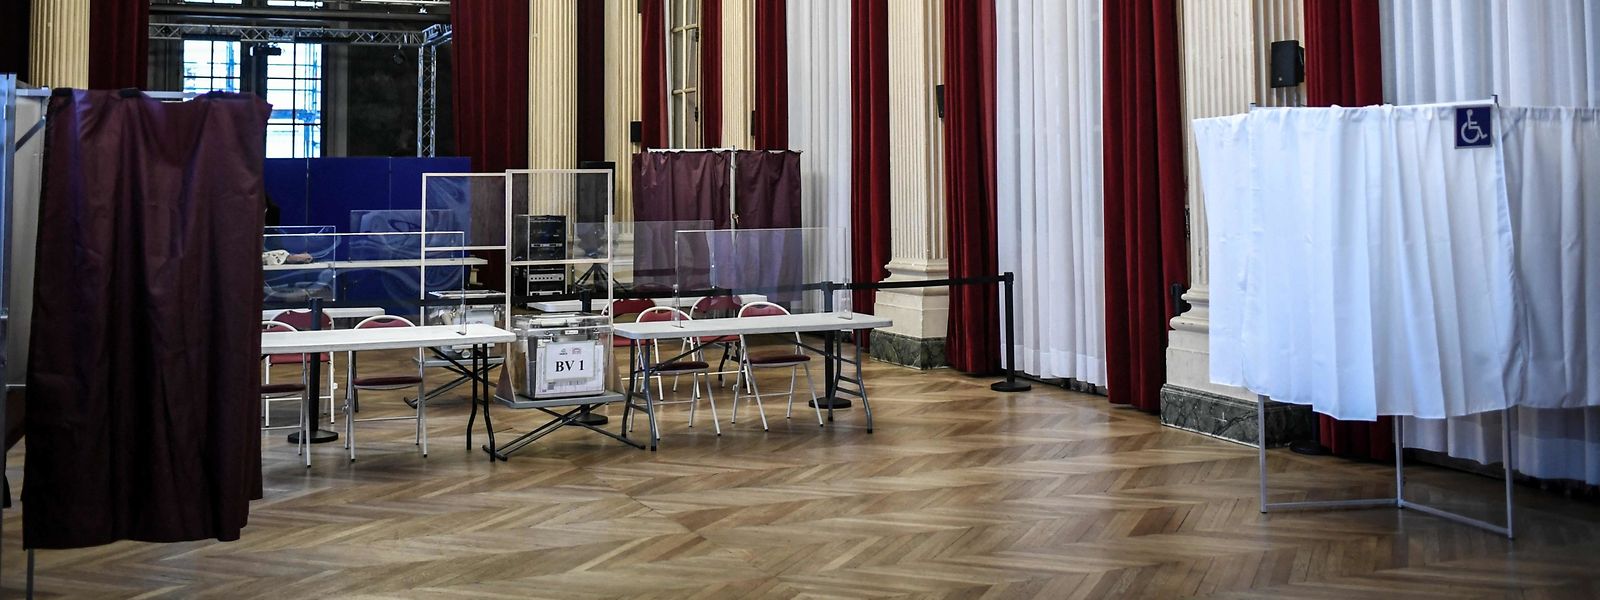 Uma mesa de voto no 10.º distrito em Paris para as eleições presidenciais francesas.